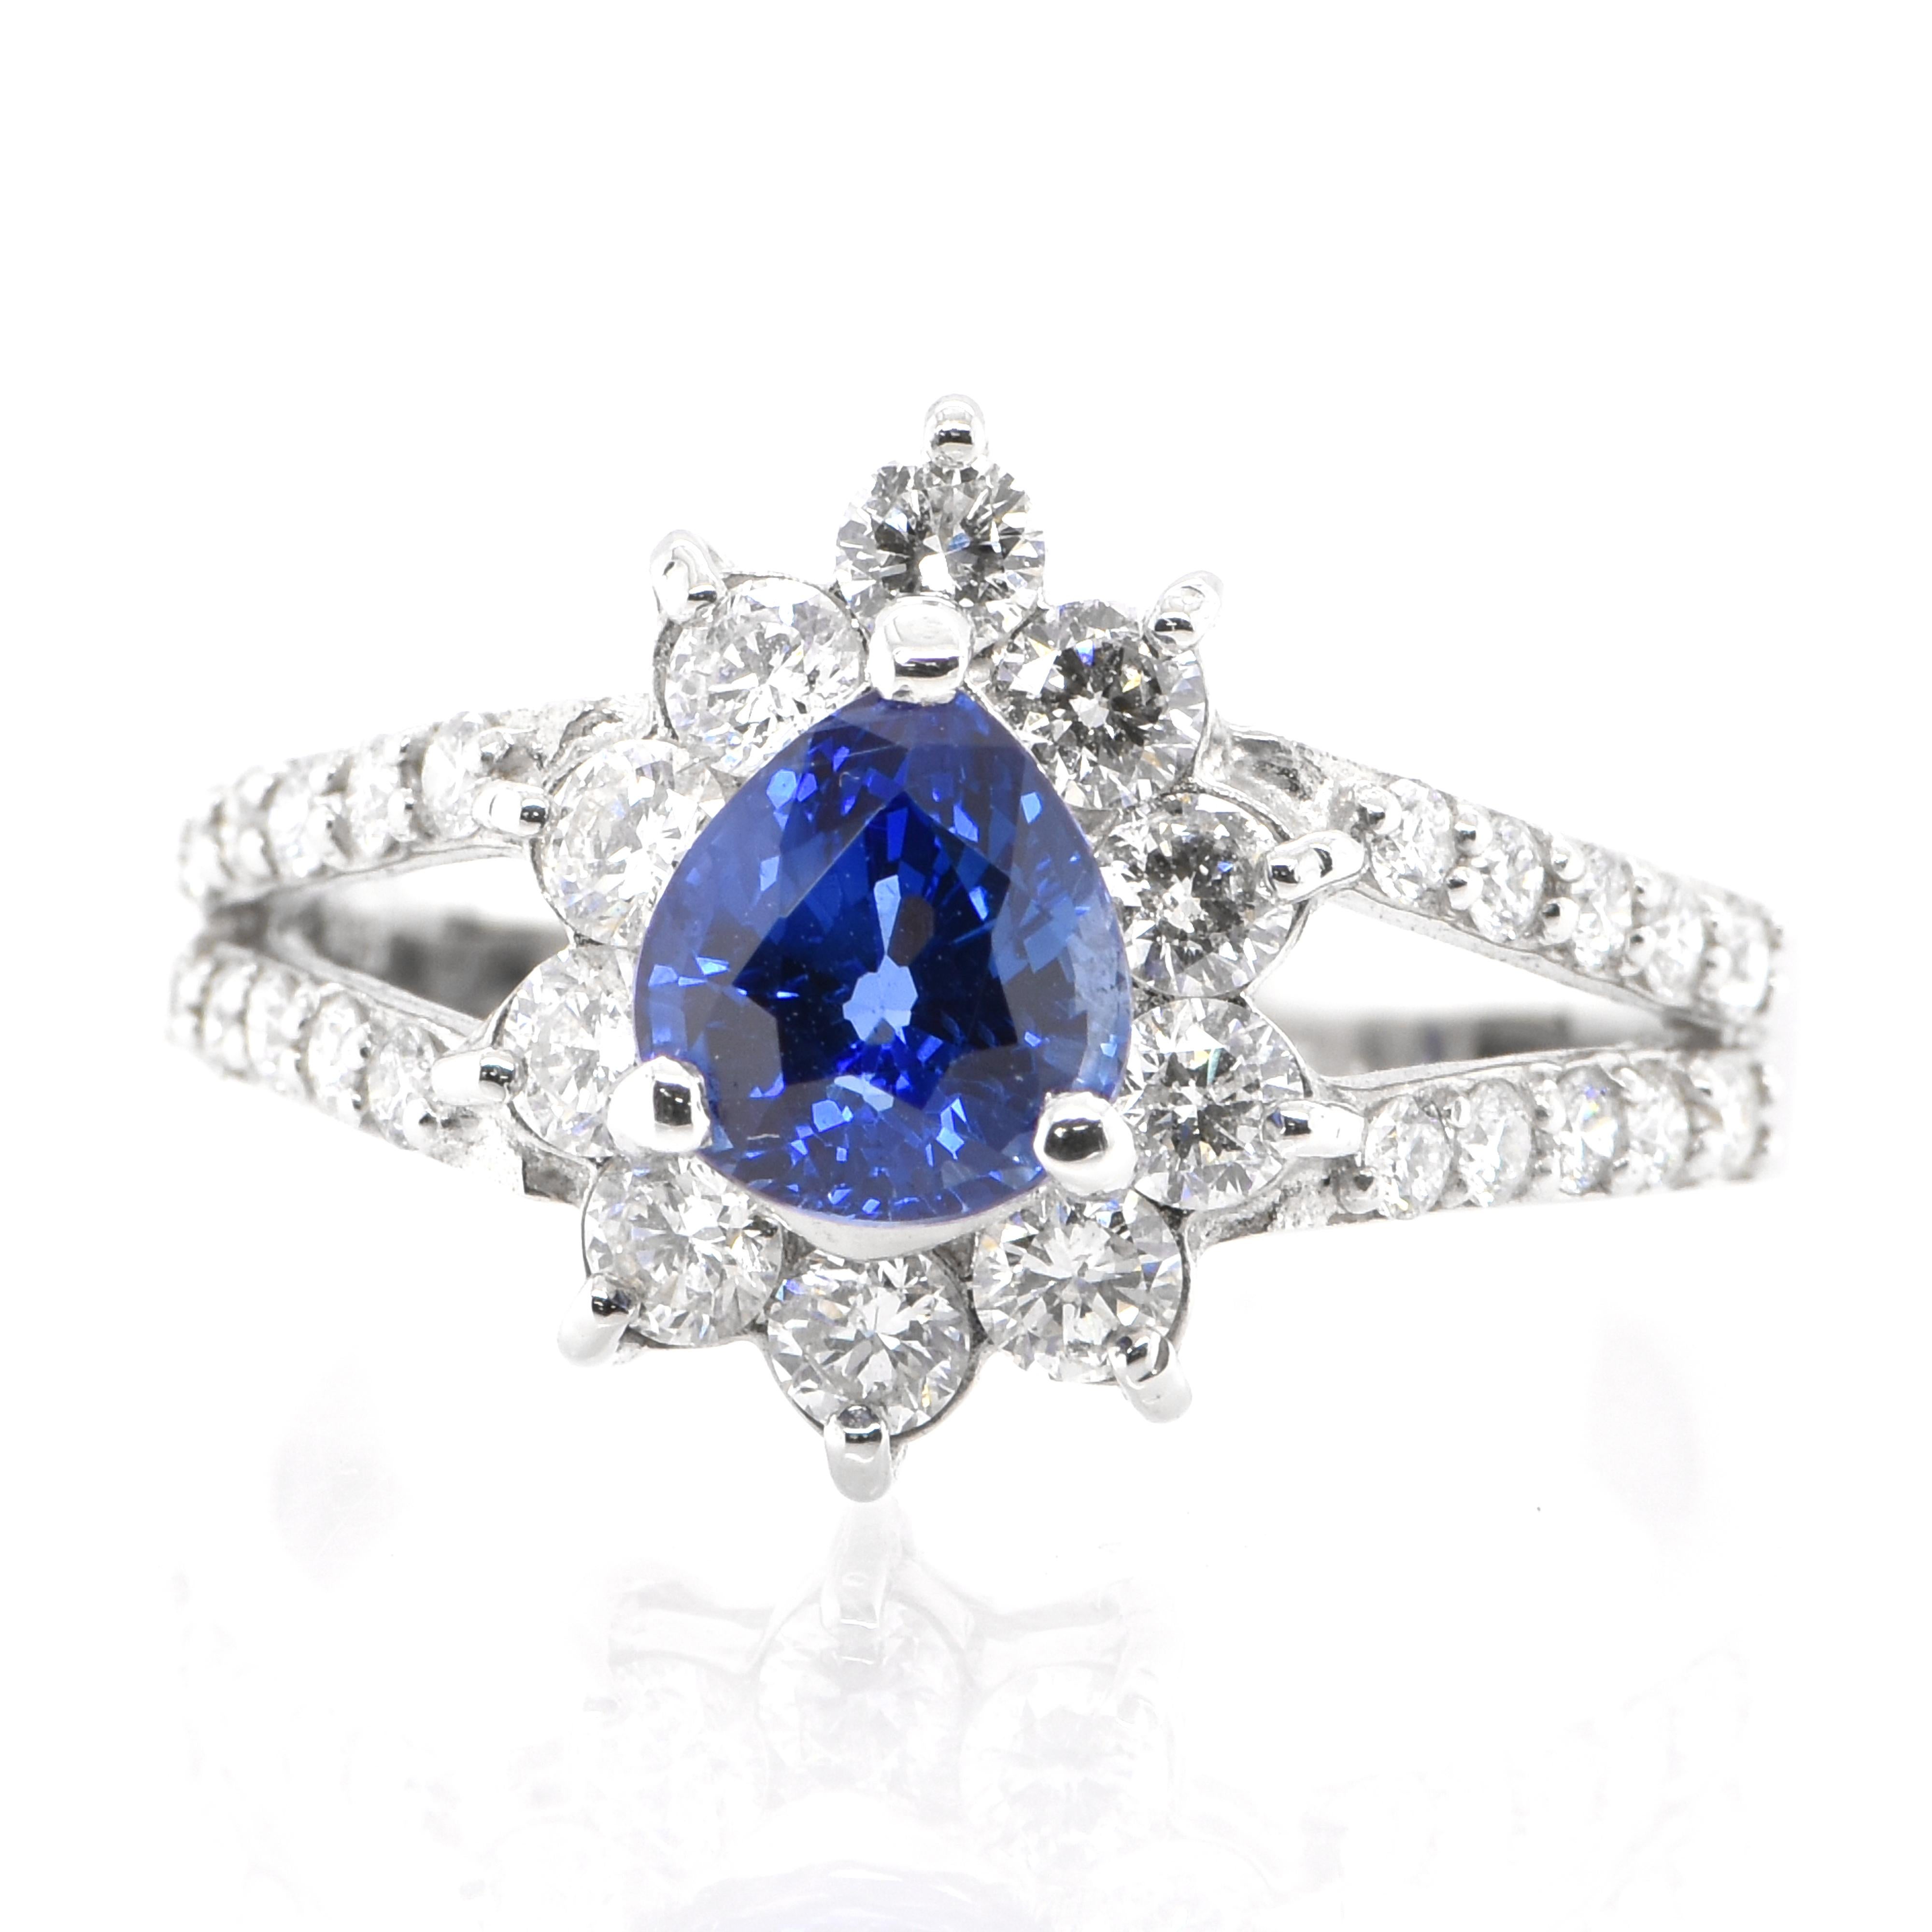 Ein wunderschöner Ring mit 1,24 Karat, natürlichem Saphir und 0,73 Karat Diamanten in Platin gefasst. Saphire haben eine außergewöhnliche Haltbarkeit - sie zeichnen sich durch Härte, Zähigkeit und Beständigkeit aus, was sie zu einem sehr beliebten